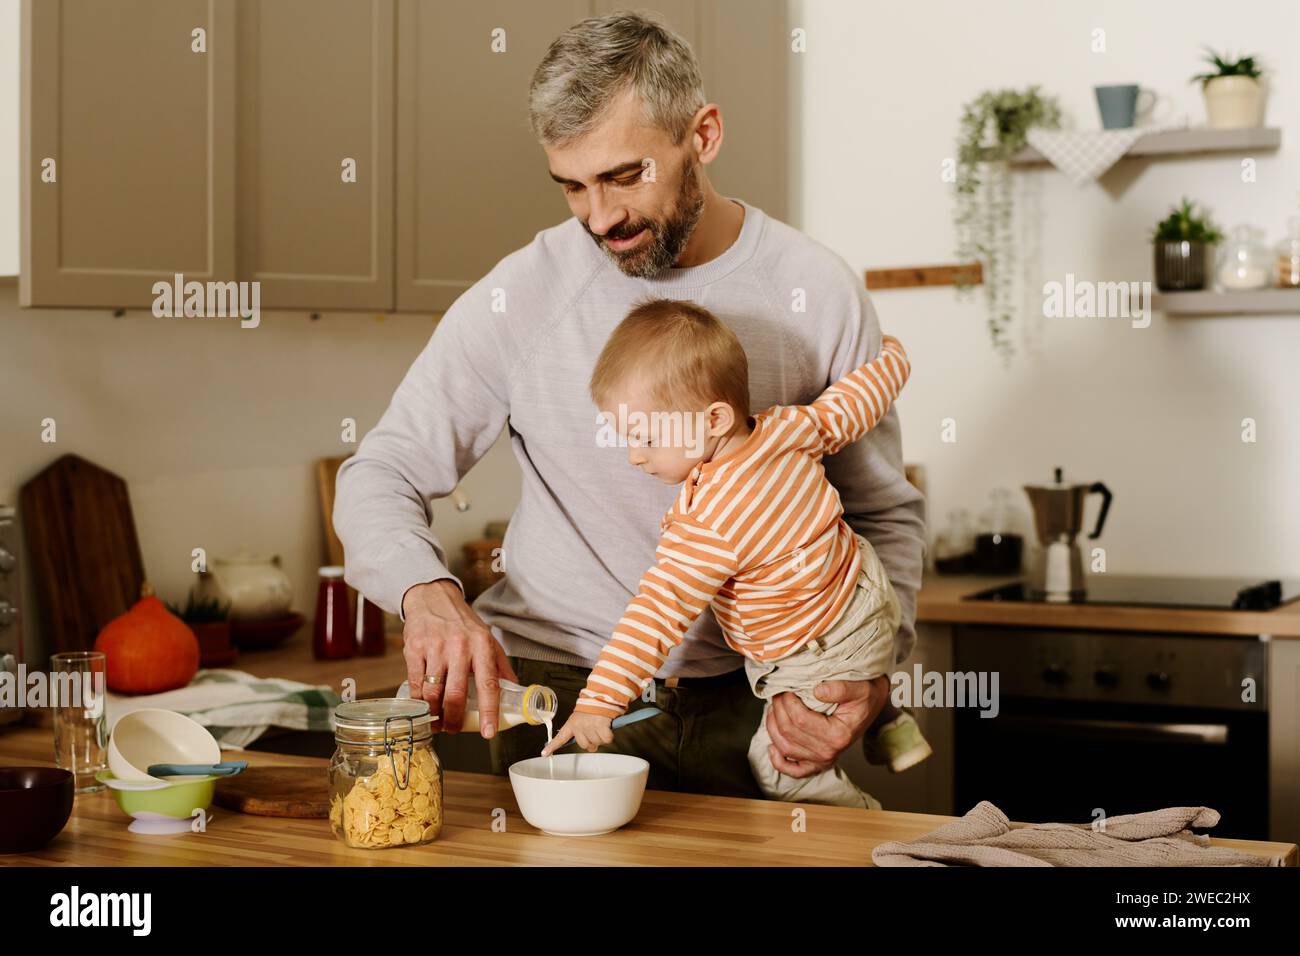 Reifer Mann mit süßem Baby-Sohn auf Händen, der frische Milch in eine Schüssel mit Cornflakes gießt, während er das Frühstück an der Küchentheke zubereitete Stockfoto